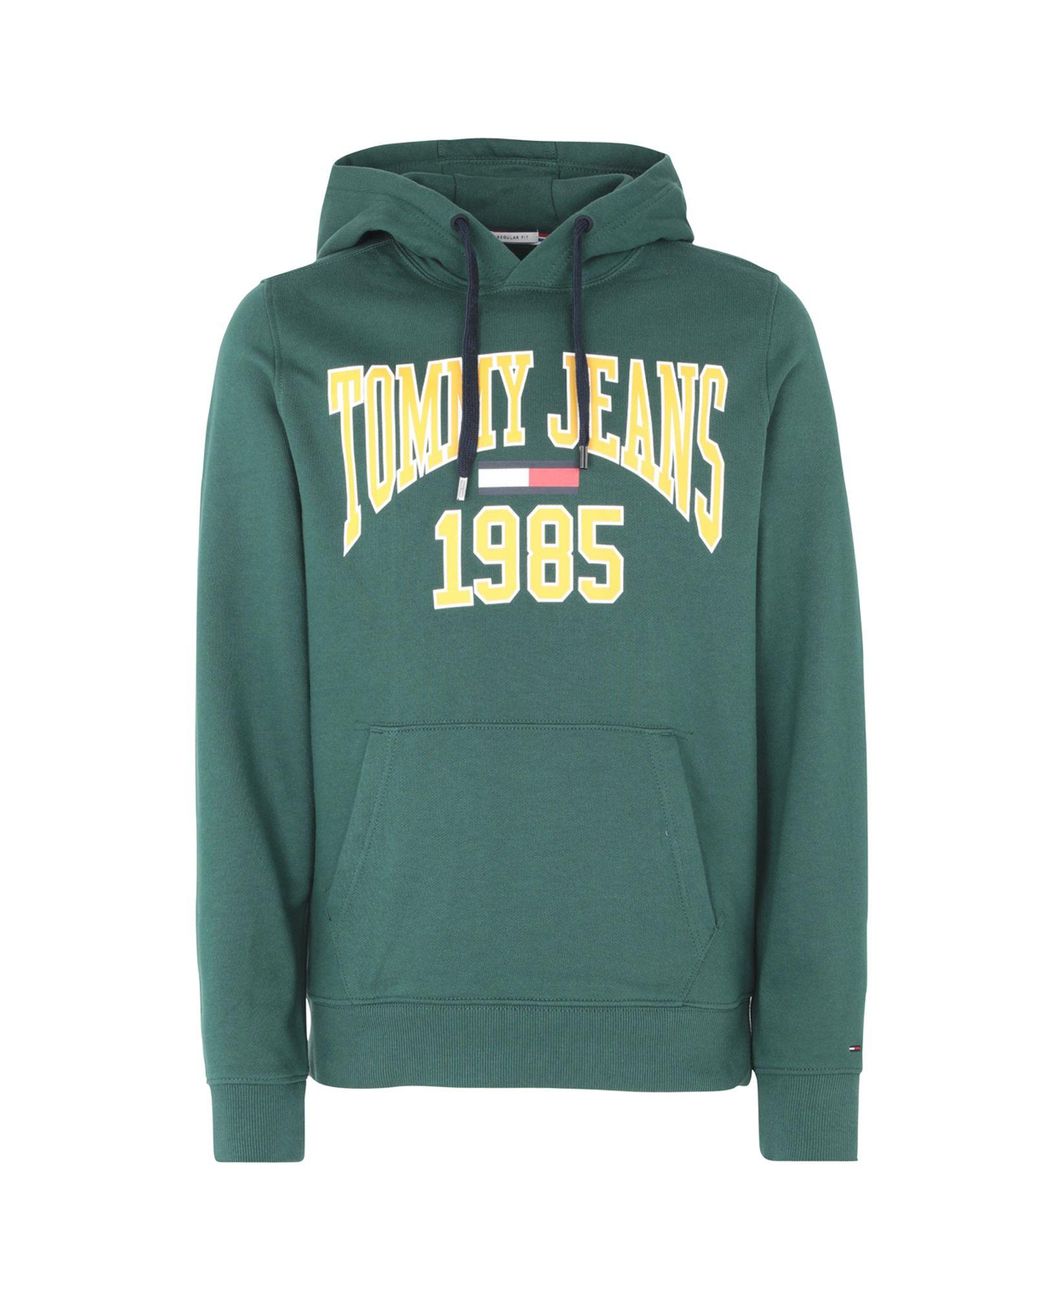 Tommy Hilfiger Fleece Sweatshirt in Green for Men - Lyst